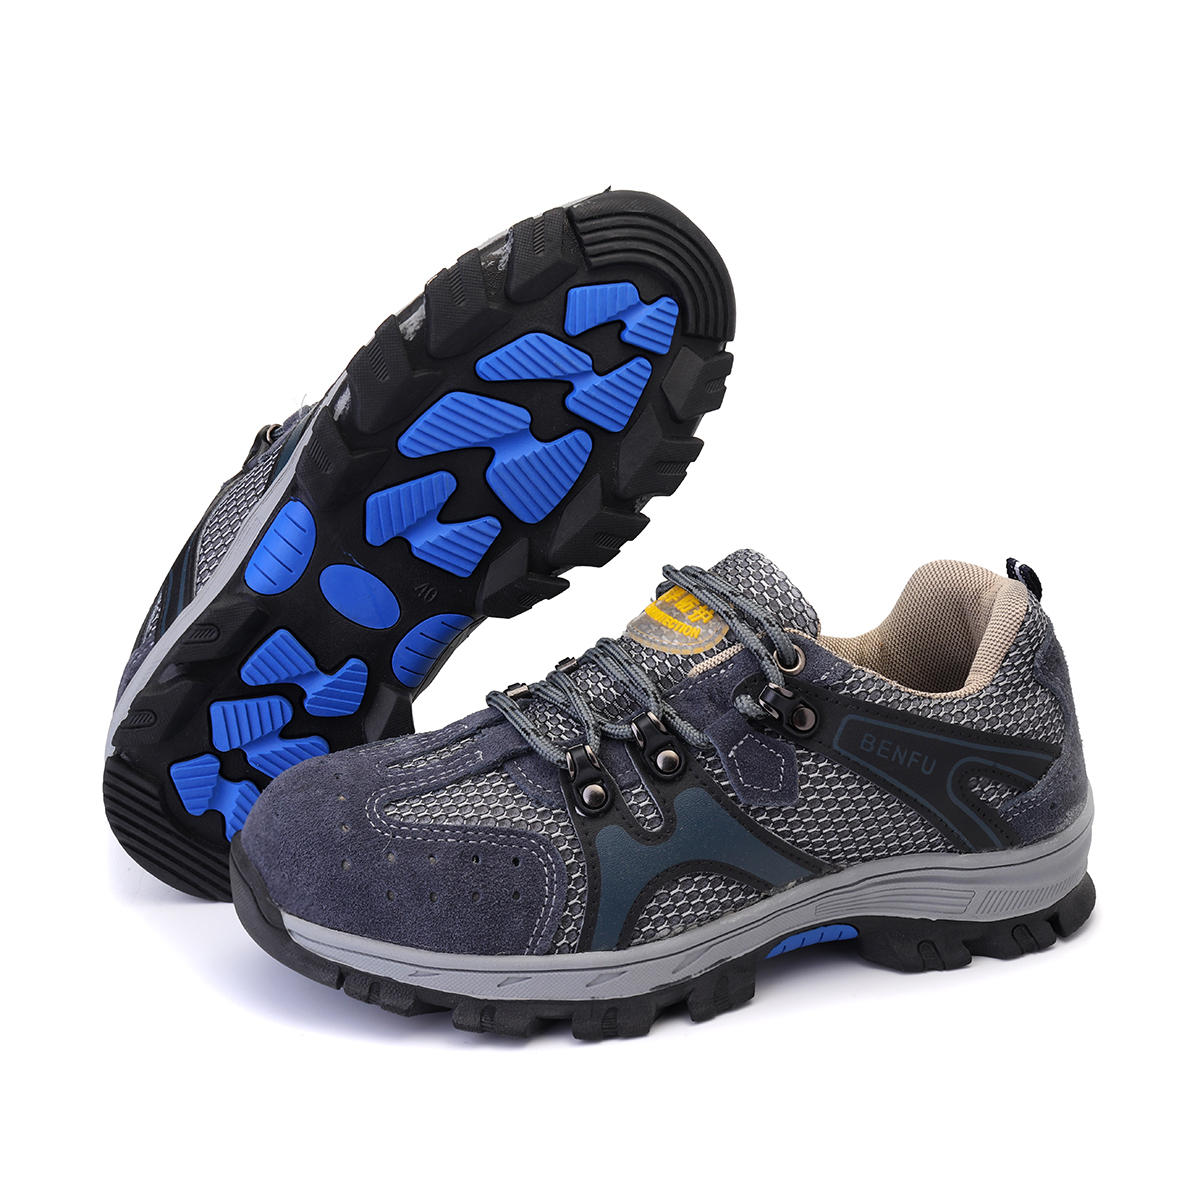 TENGOO sapatos de segurança masculinos com biqueira de aço, tênis antiderrapantes, respiráveis, adequados para caminhadas, escaladas e corridas.